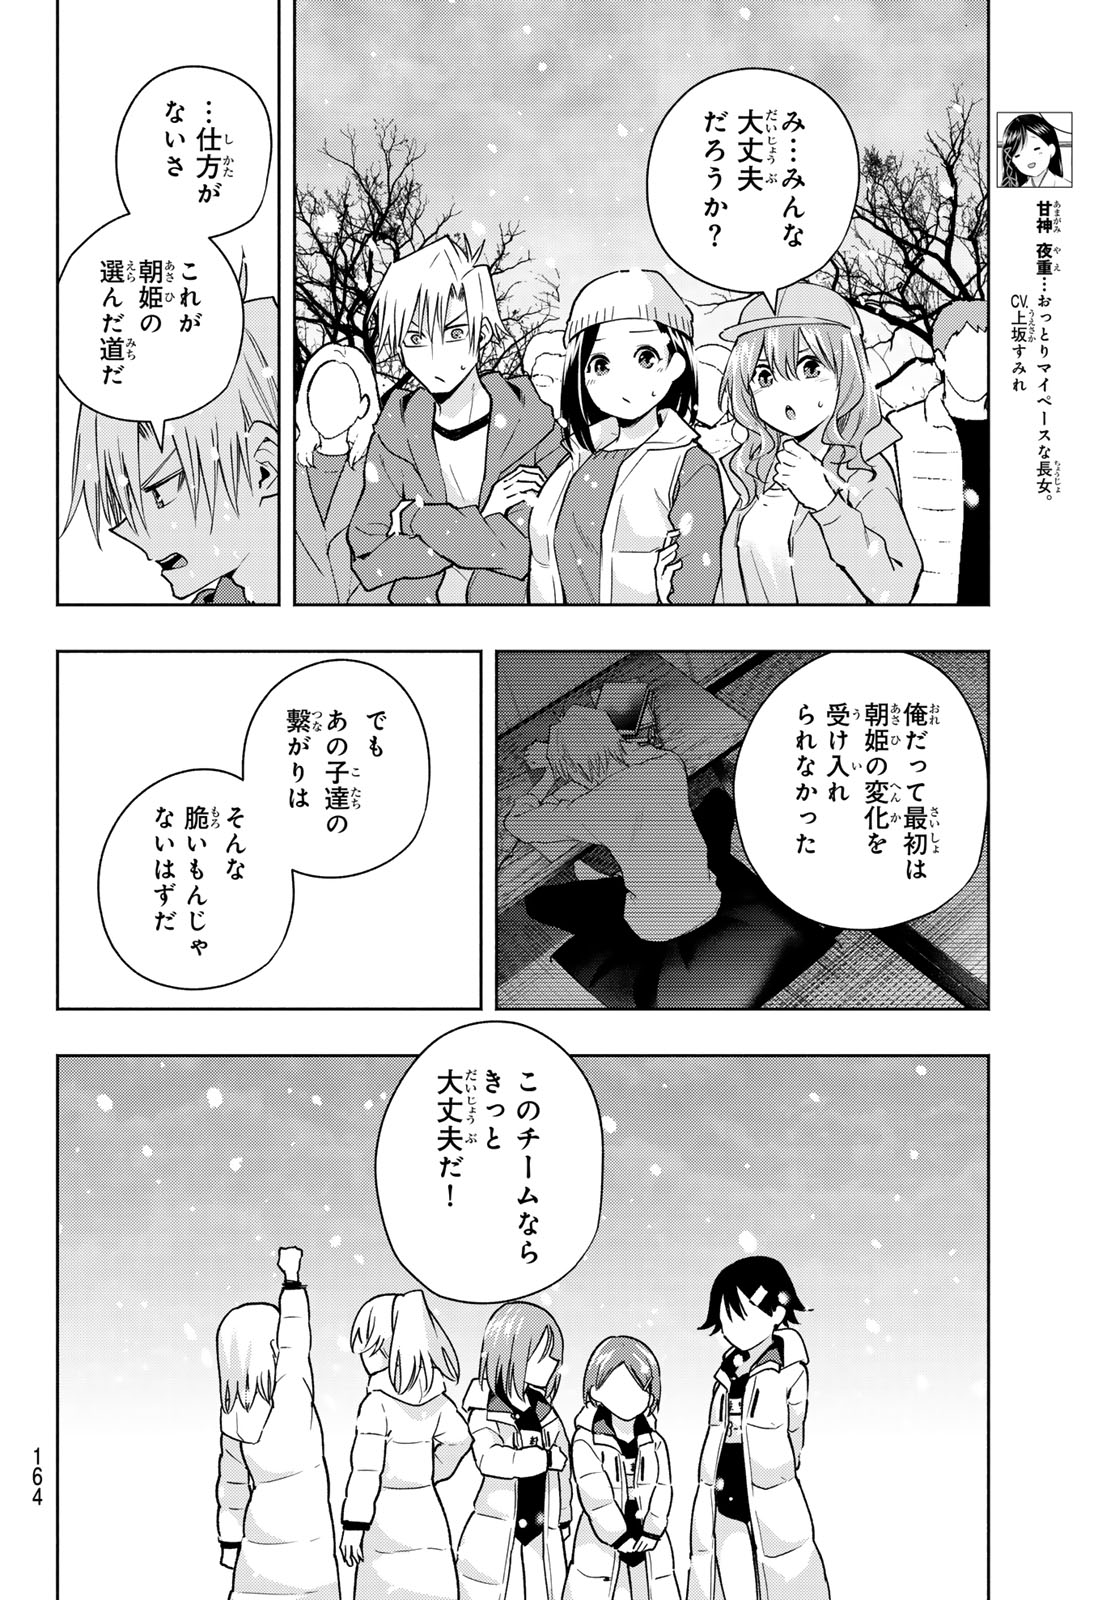 Amagami-san Chi no Enmusubi - Chapter 144 - Page 4